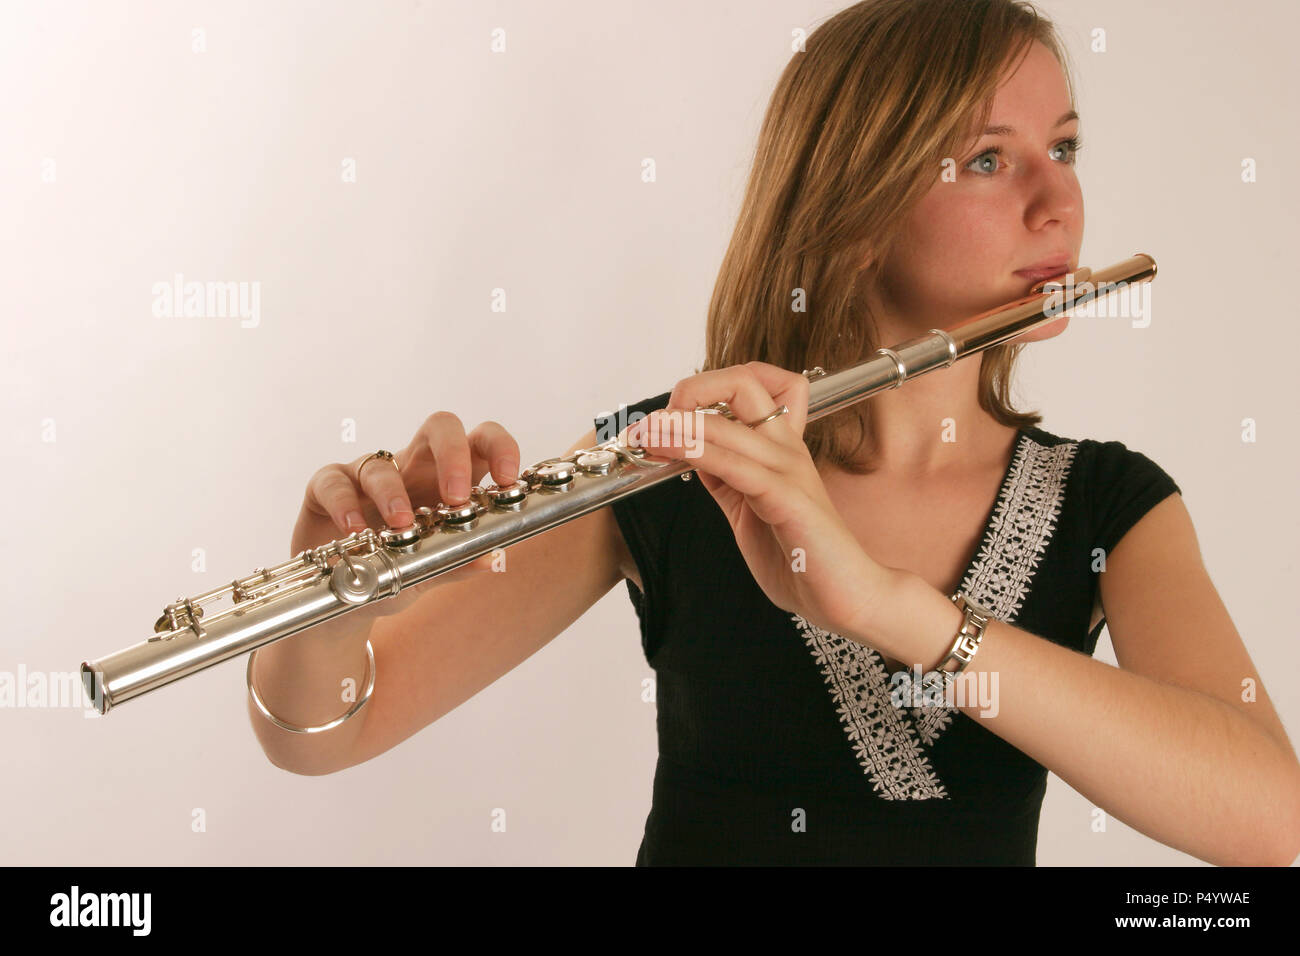 Flûte en position de jeu montrant les doigts sur les touches et l'embouchure modèle libération - Anna Marchant Banque D'Images